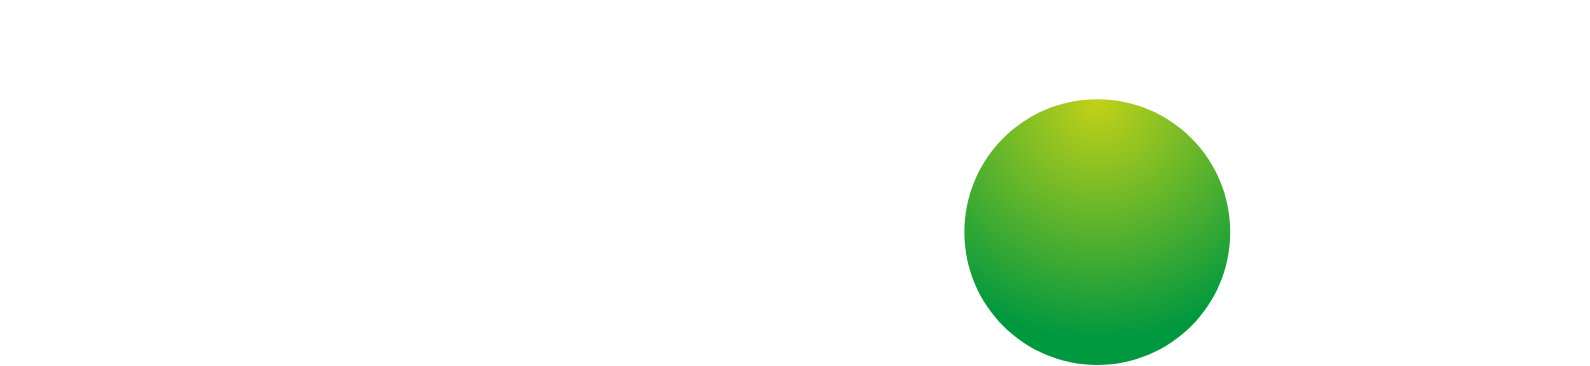 Kainos Group logo grand pour les fonds sombres (PNG transparent)